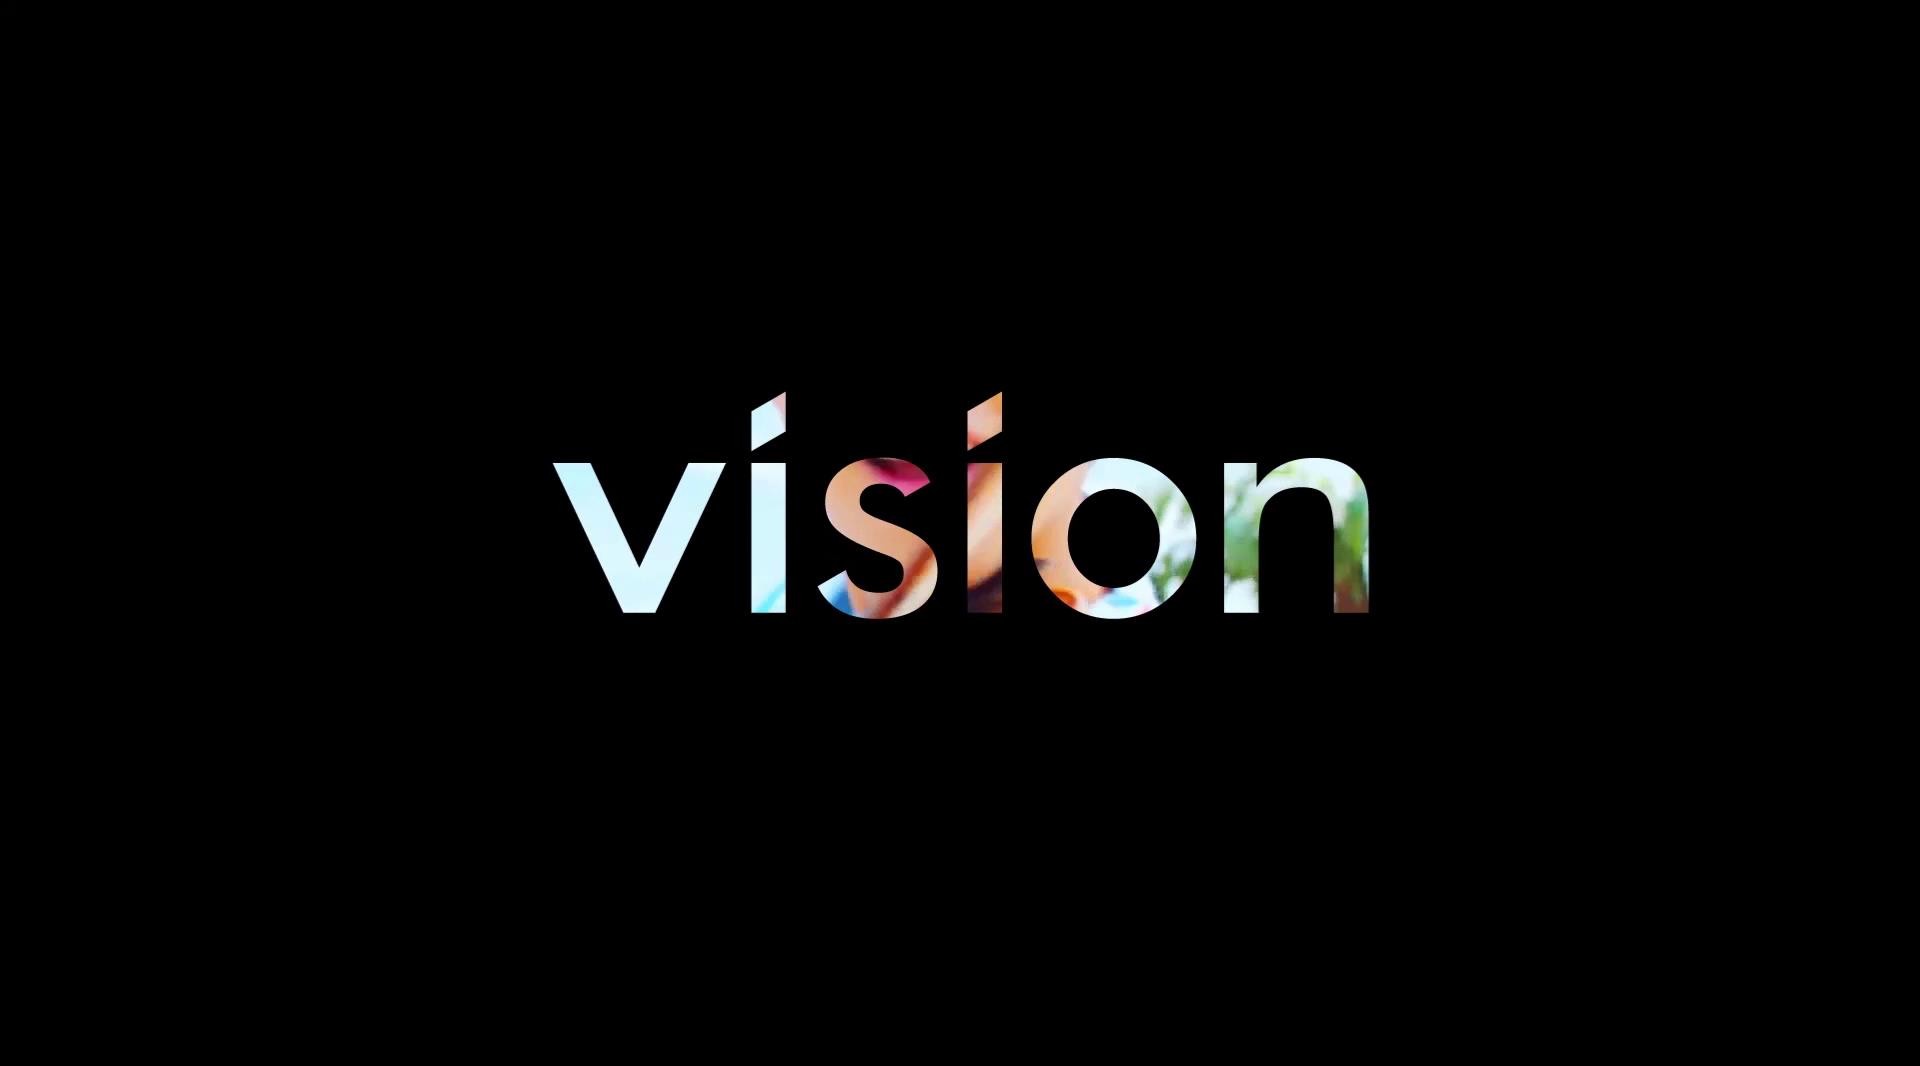 Vision Reel 2019 